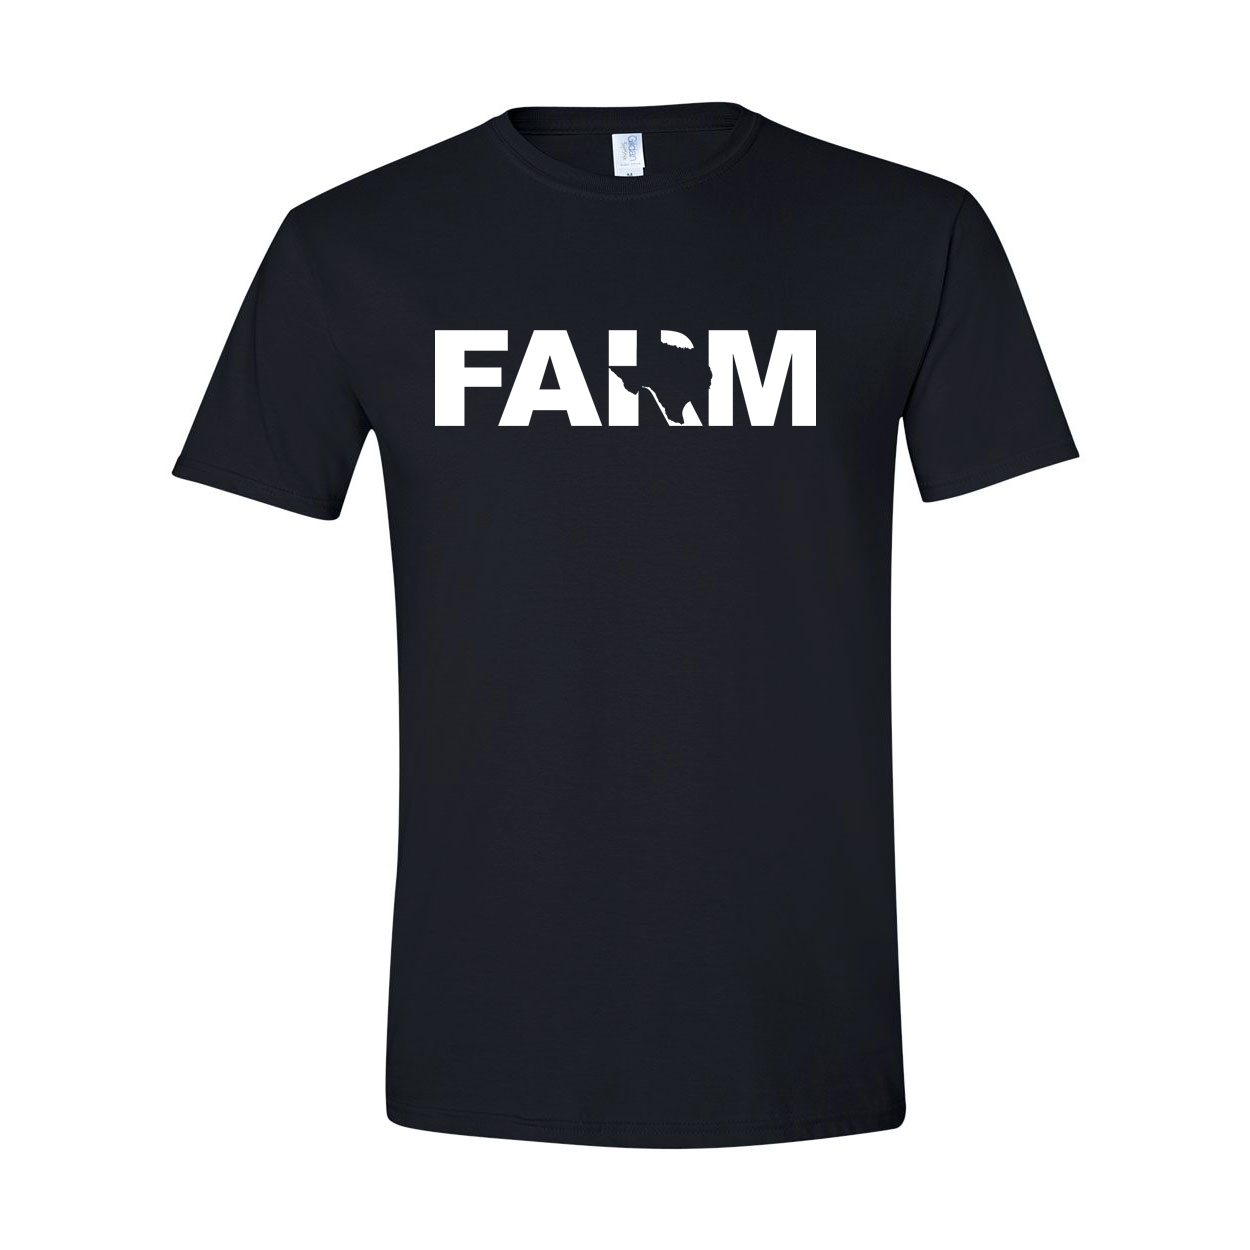 Farm Texas Classic T-Shirt Black (White Logo)